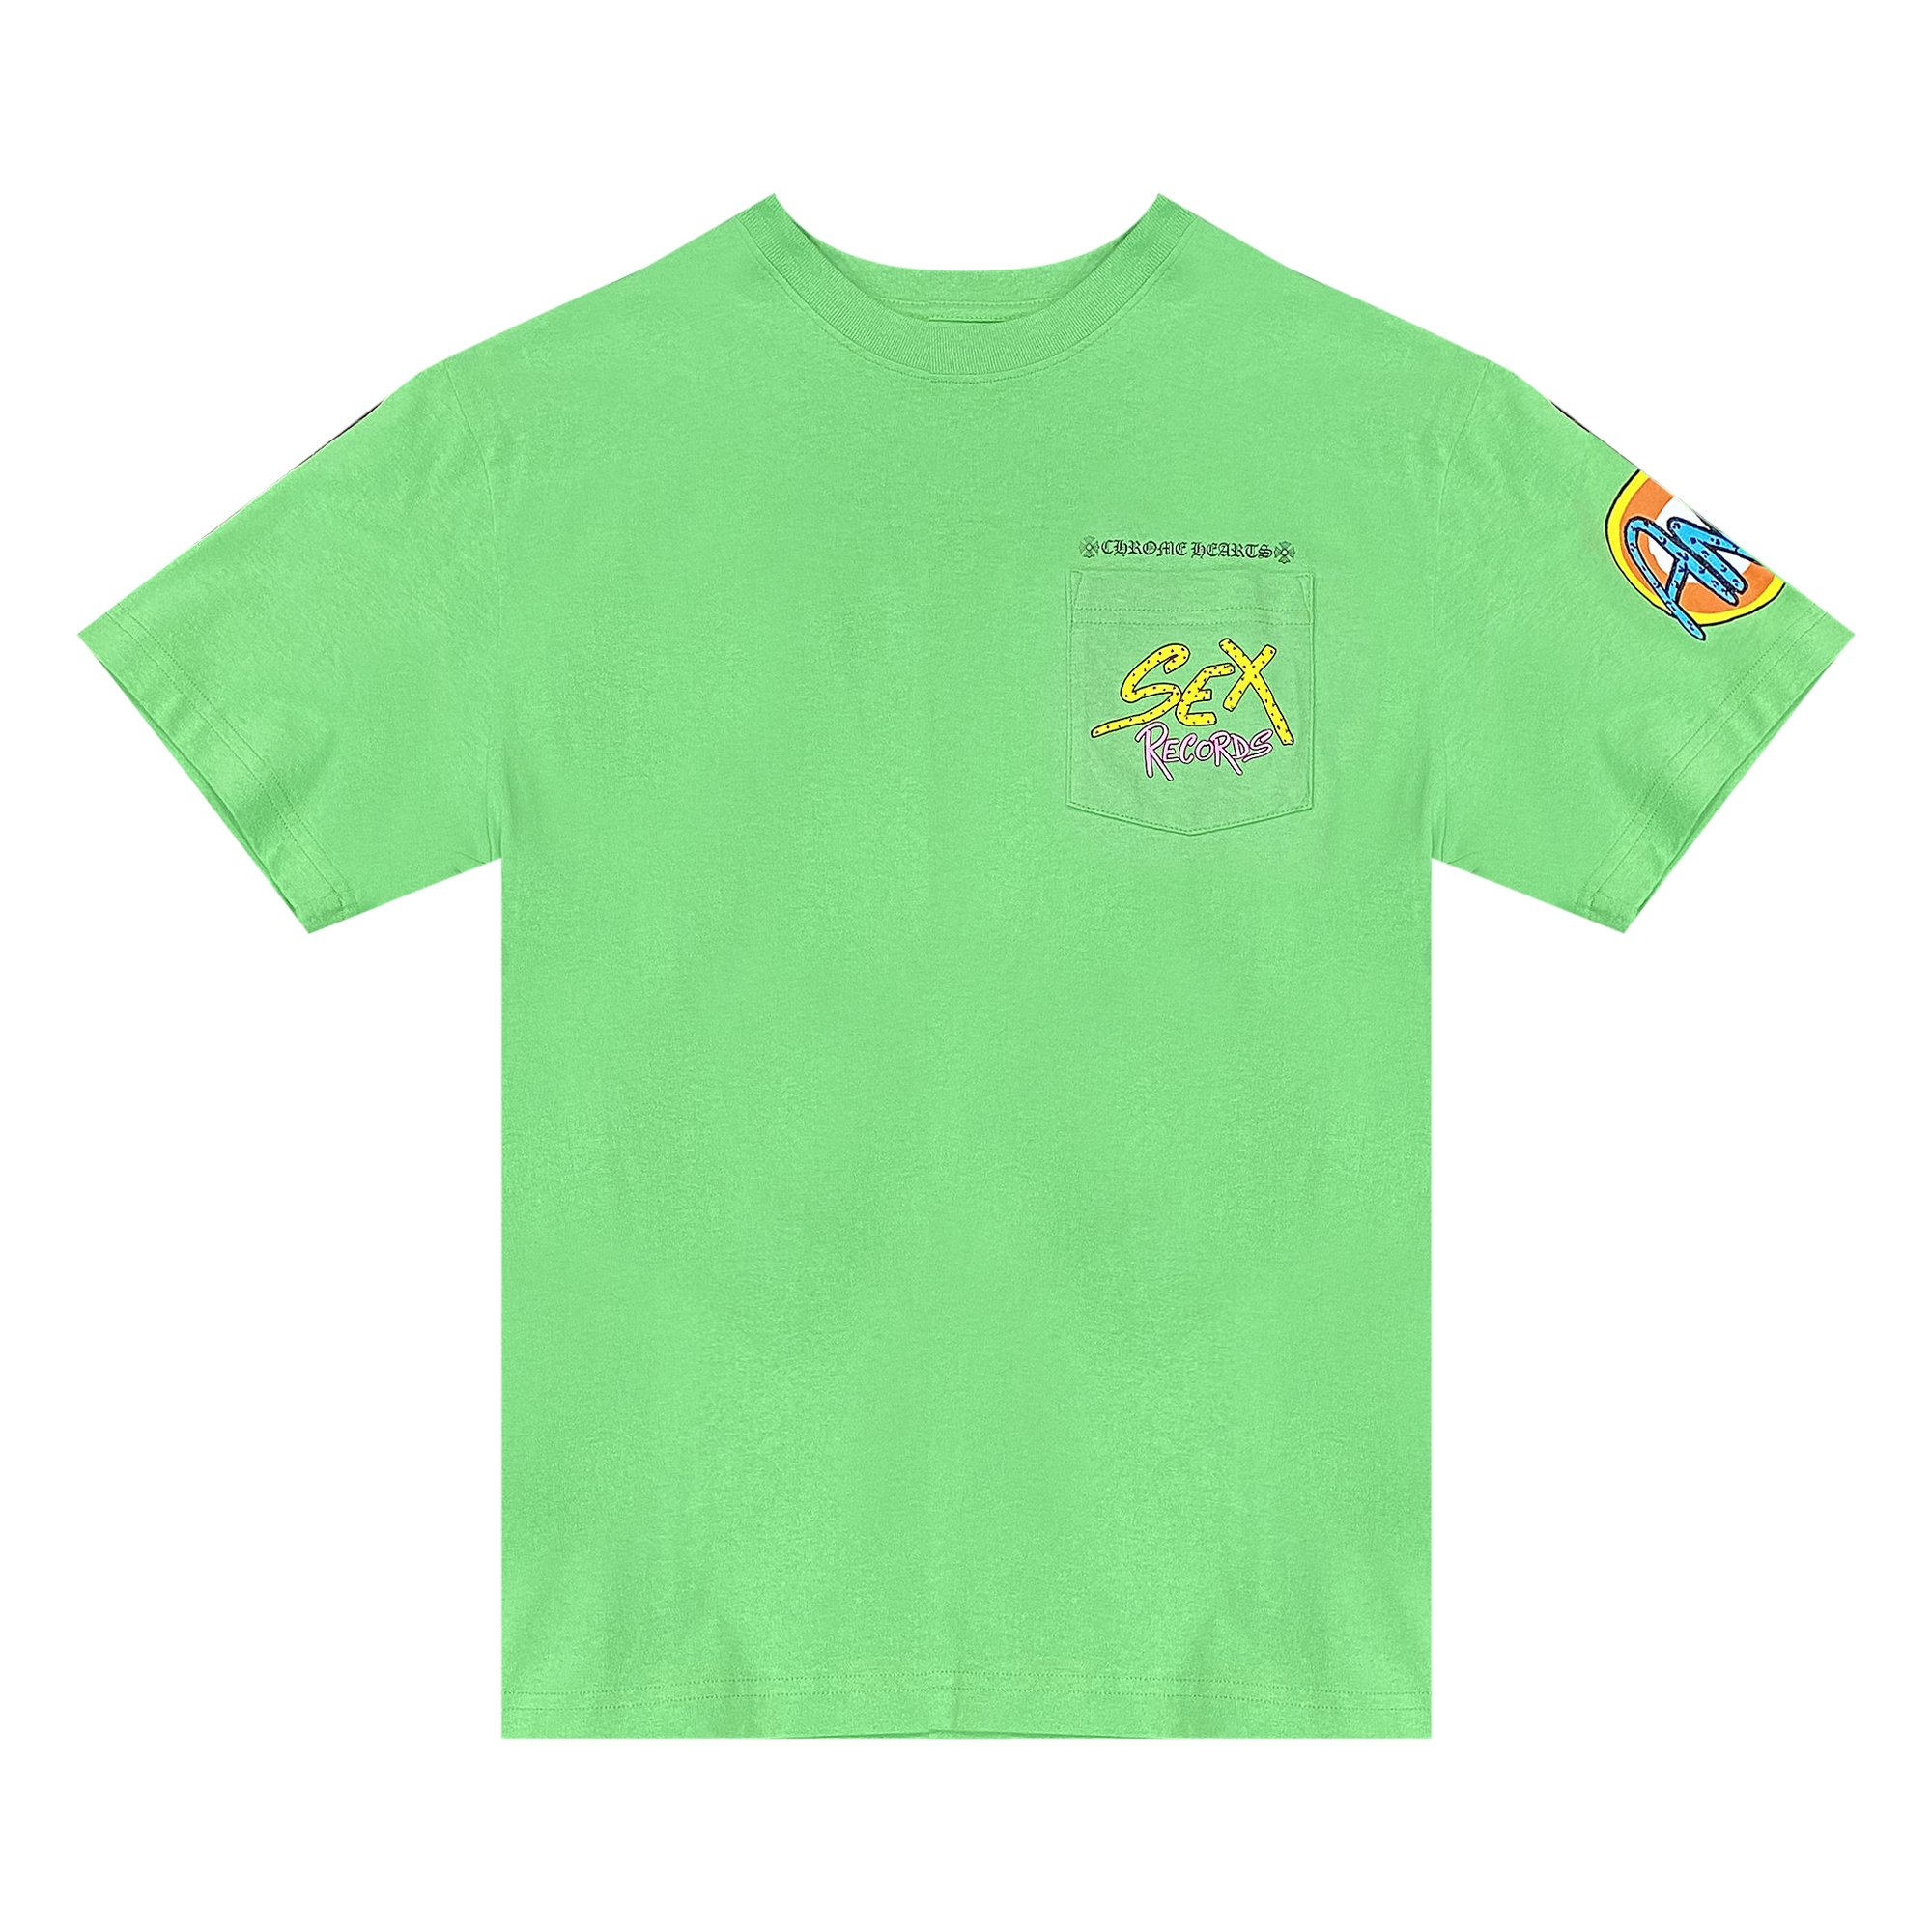 Buy Chrome Hearts x Matty Boy Sex Records T-Shirt 'Green' - 1383